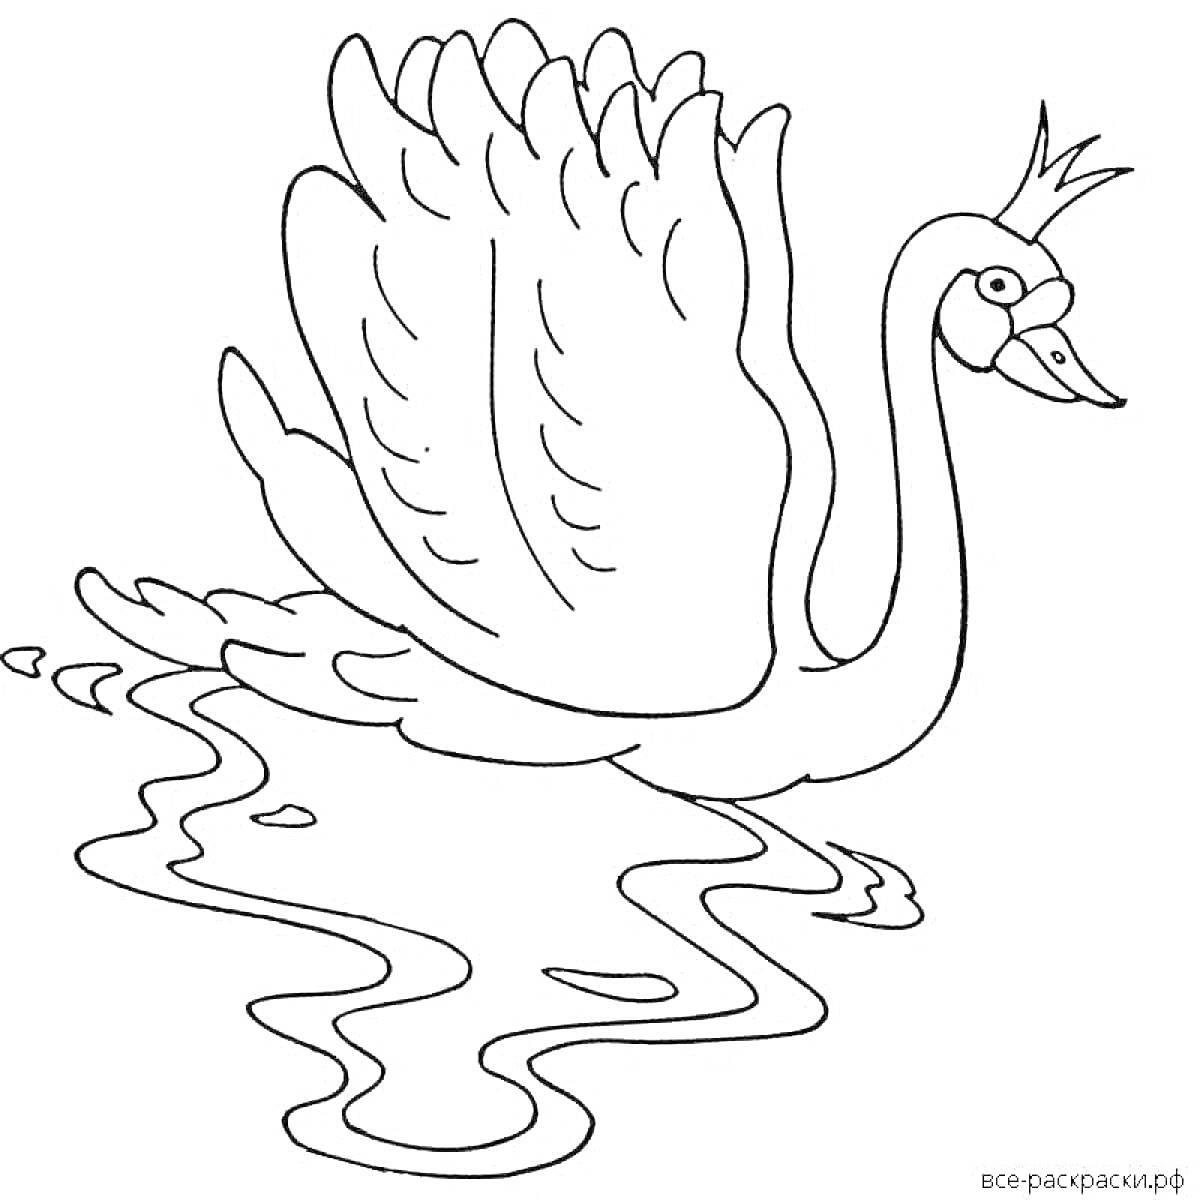 Раскраска Царевна-лебедь с короной, плывущая по воде